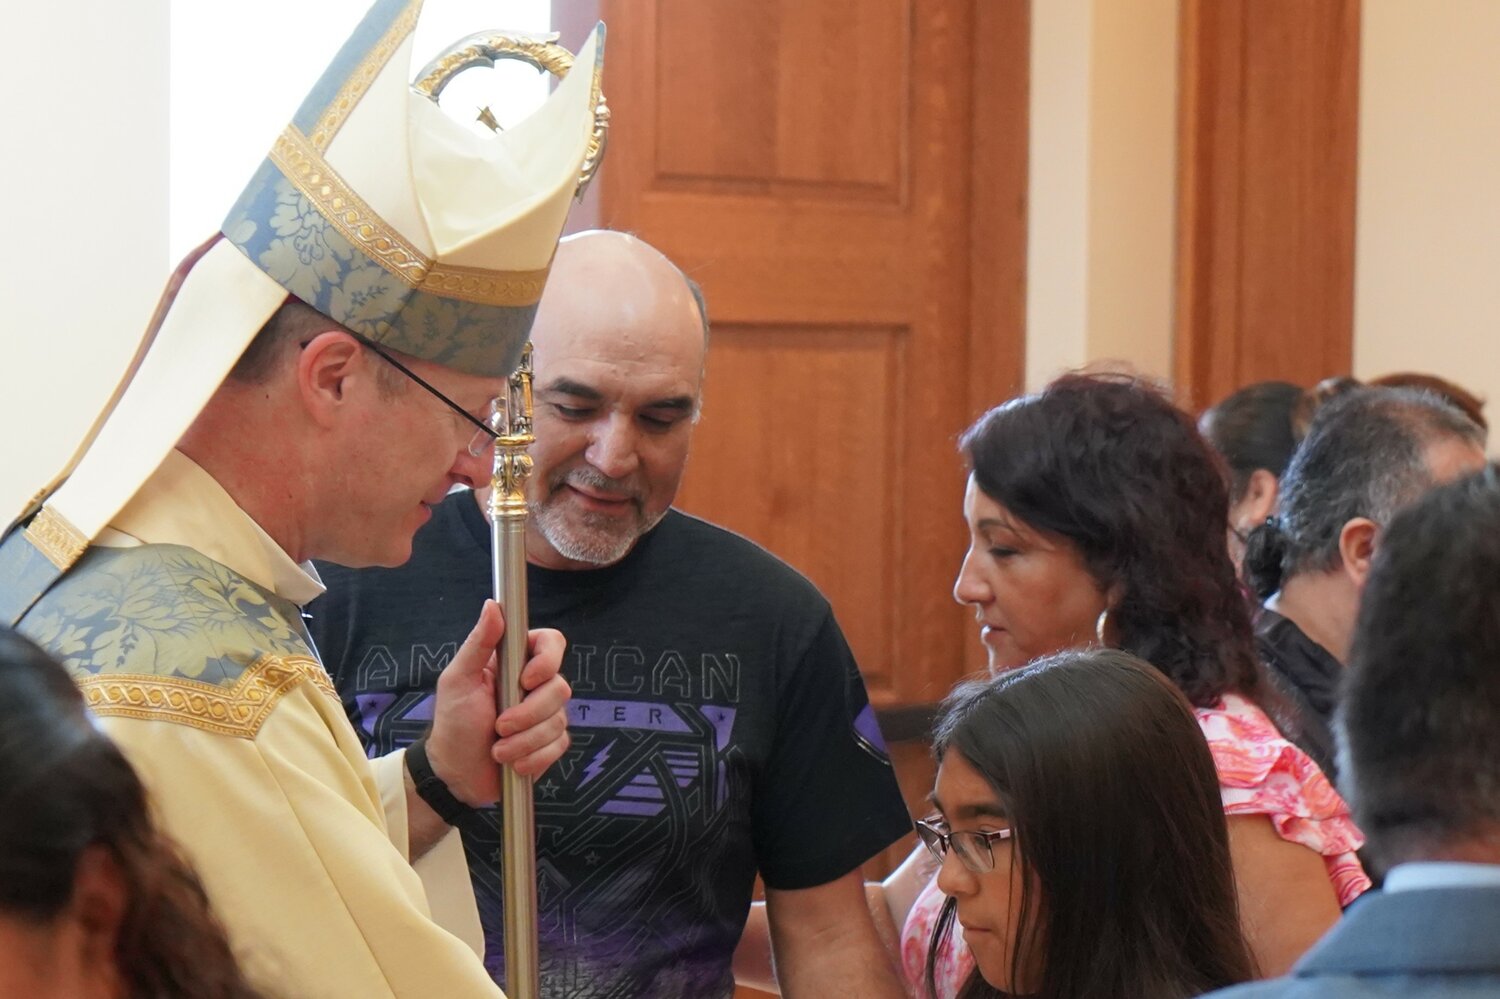 El obispo W. Shawn McKnight saluda a la gente después de una Misa diocesana en Español en la Catedral de St. Joseph el 18 de junio.